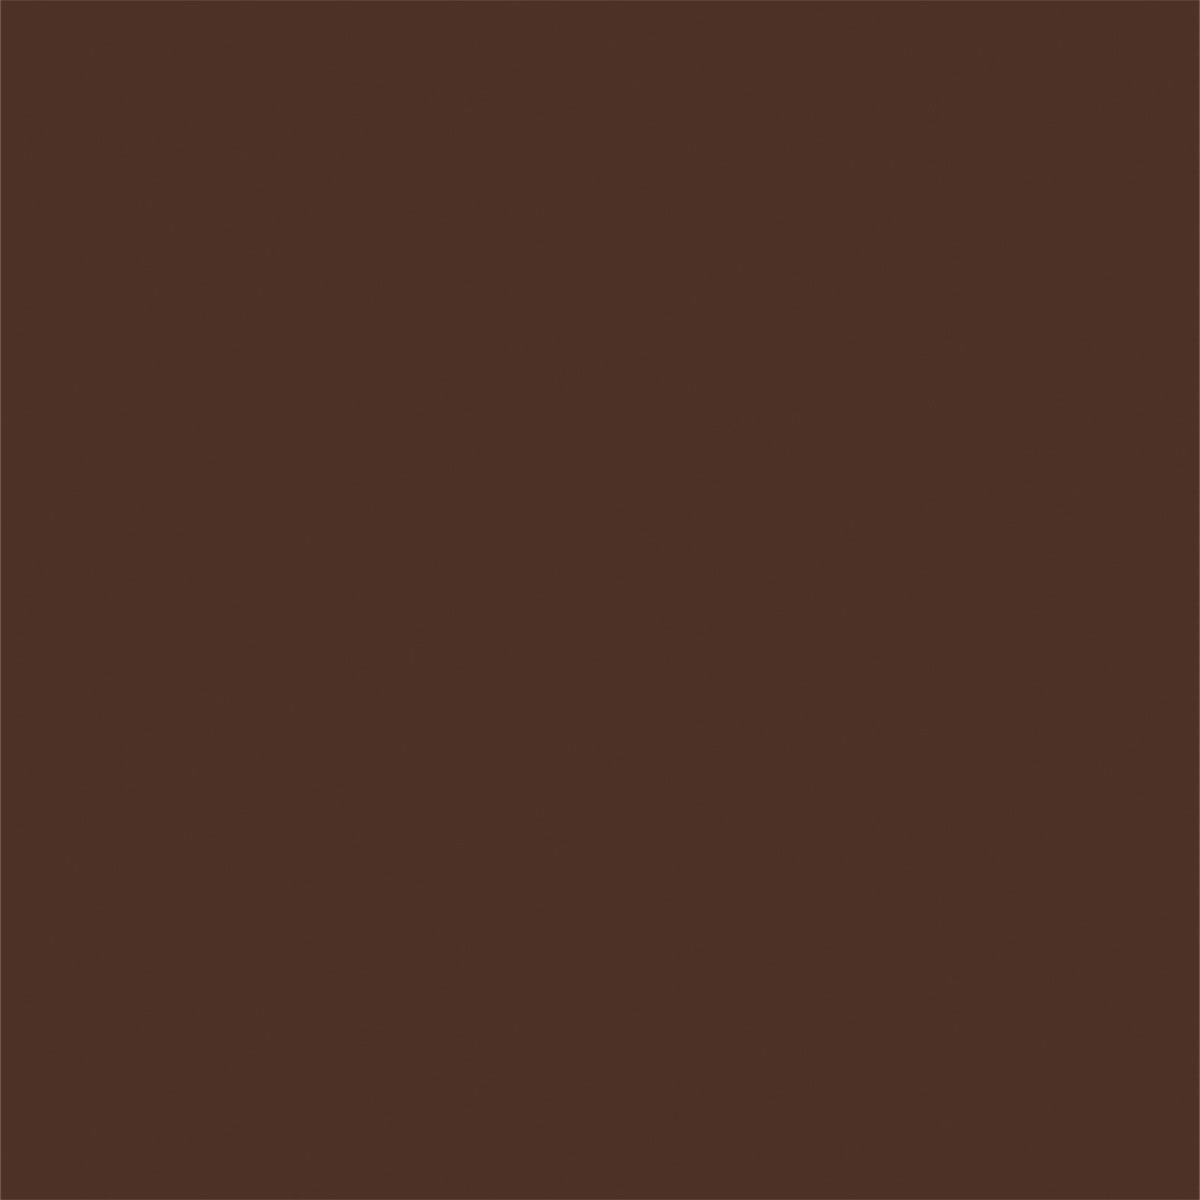 Dark Brown Coffee Color Solid Backdrops